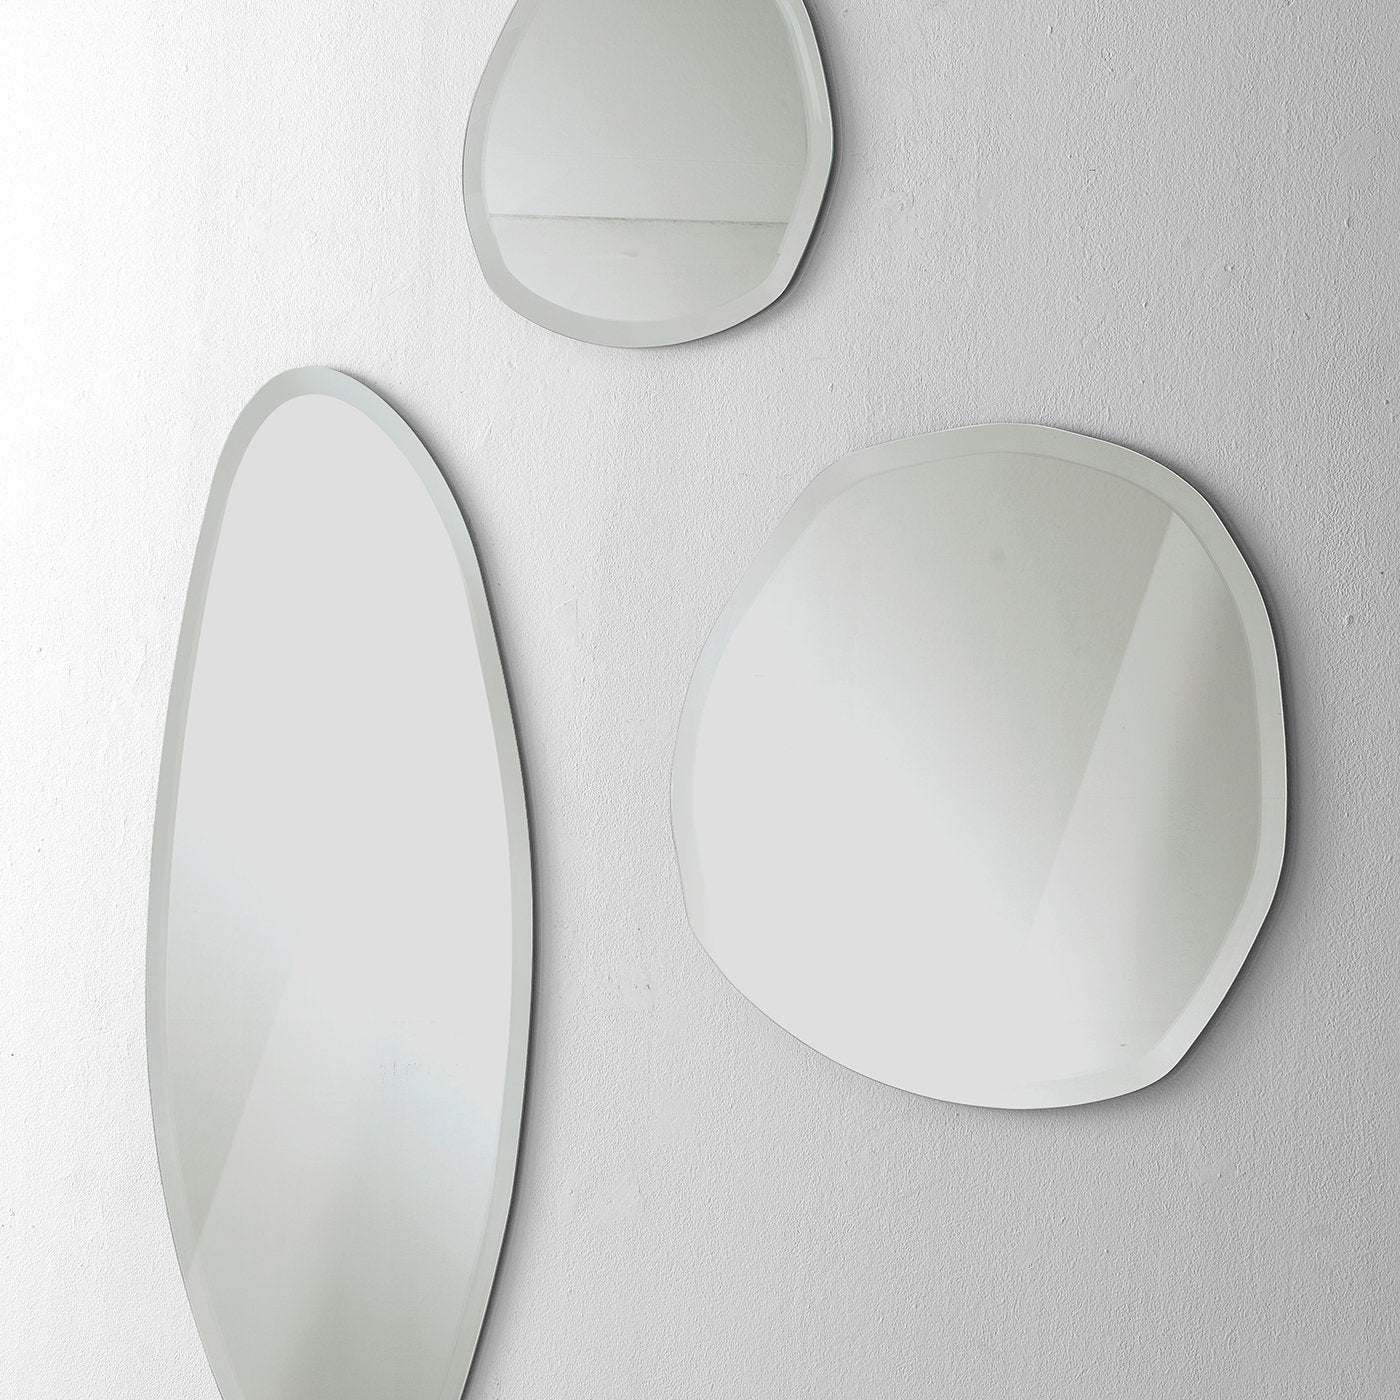 Stone Wall Mirror #2 by Norberto Delfinetti - Alternative view 1